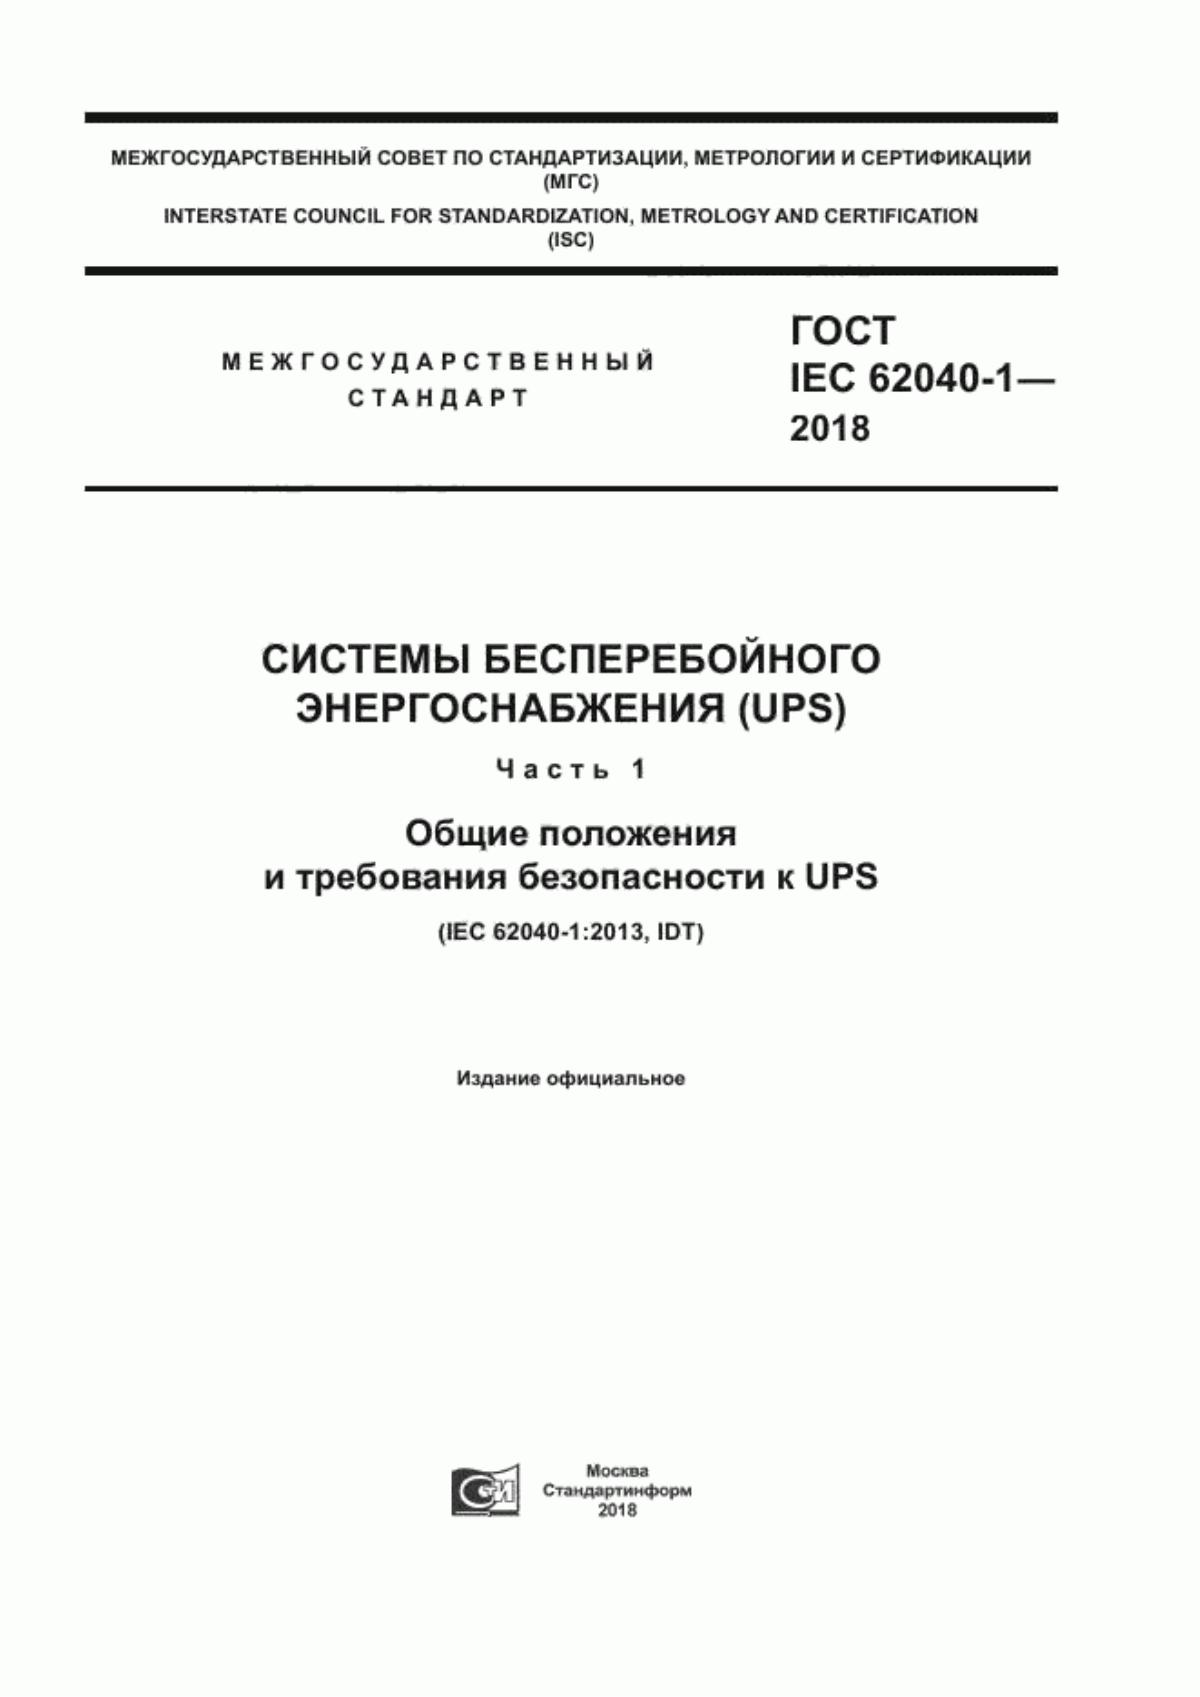 ГОСТ IEC 62040-1-2018 Системы бесперебойного энергоснабжения (UPS). Часть 1. Общие положения и требования безопасности к UPS